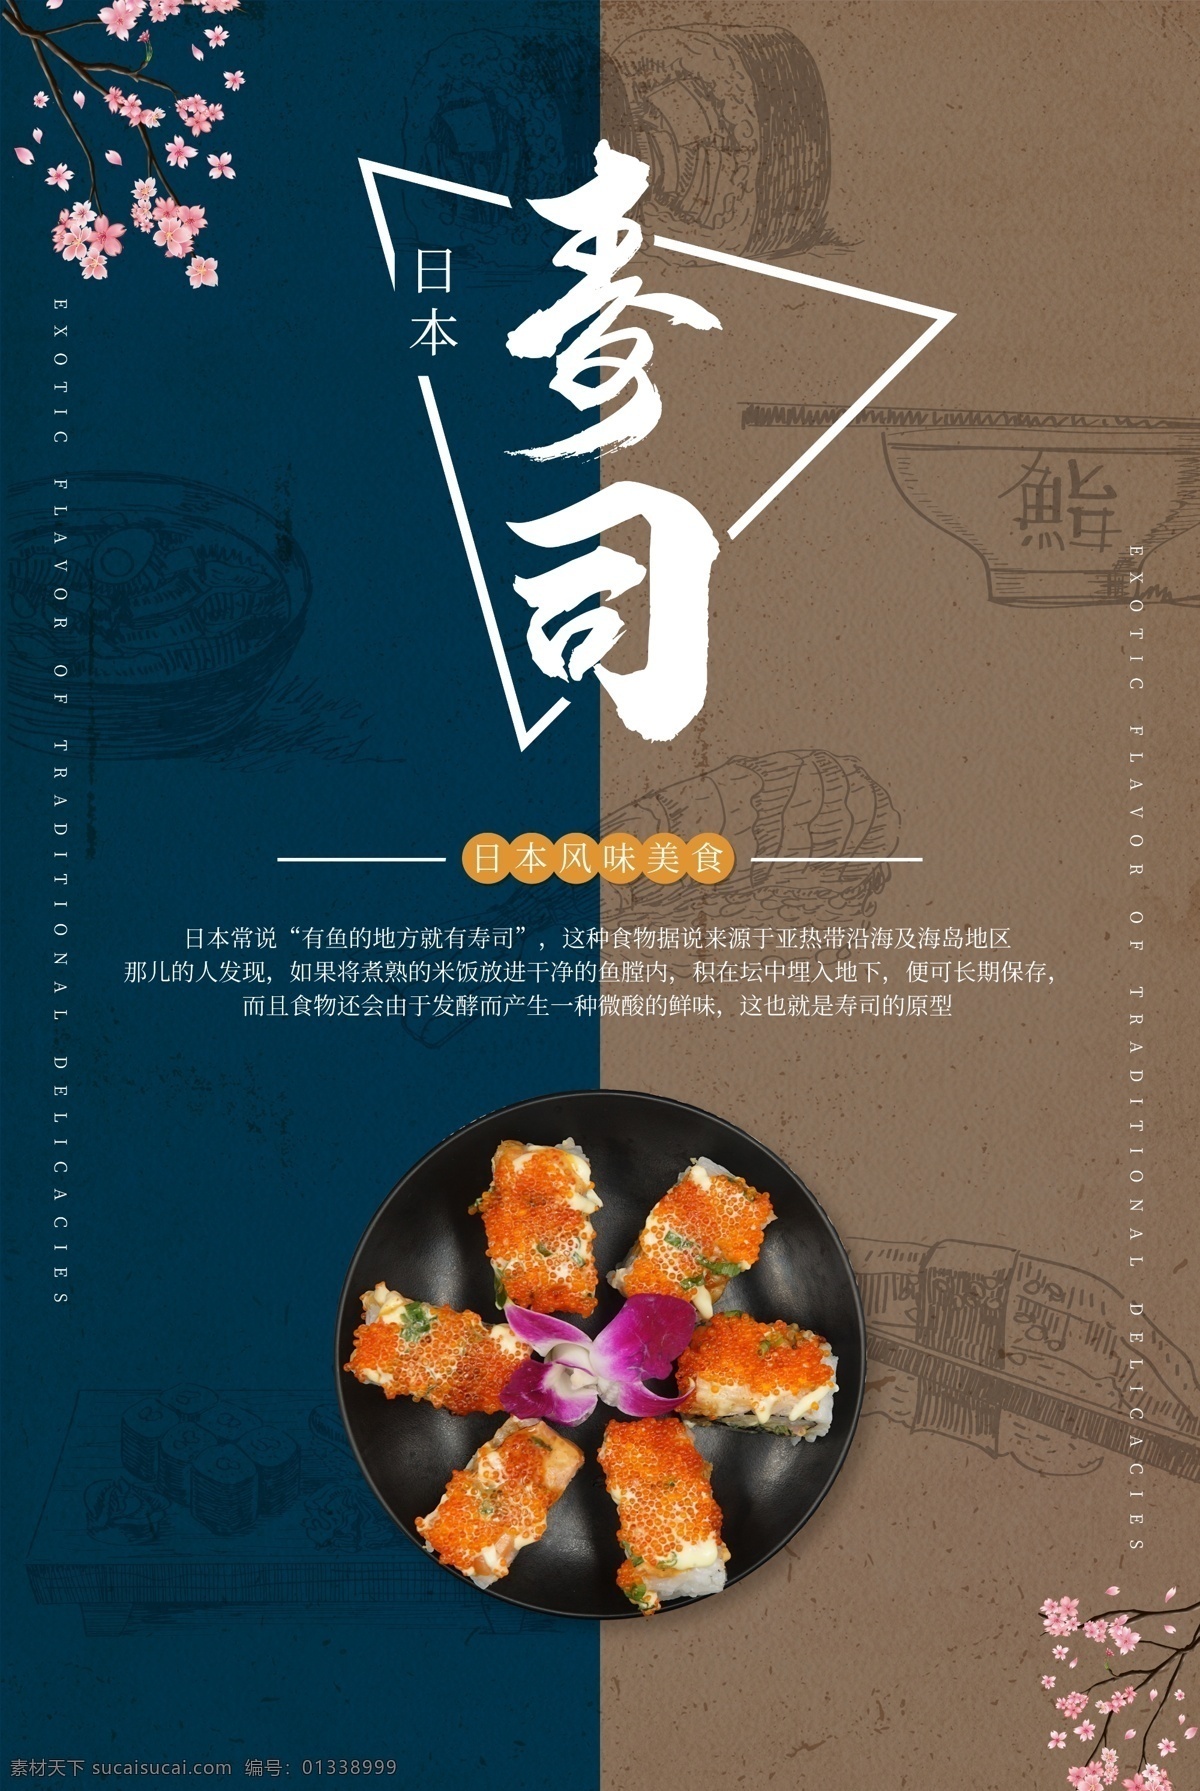 日本 寿司 灯箱 海报 日本寿司 寿司海报 日本寿司海报 饭团 台湾饭团